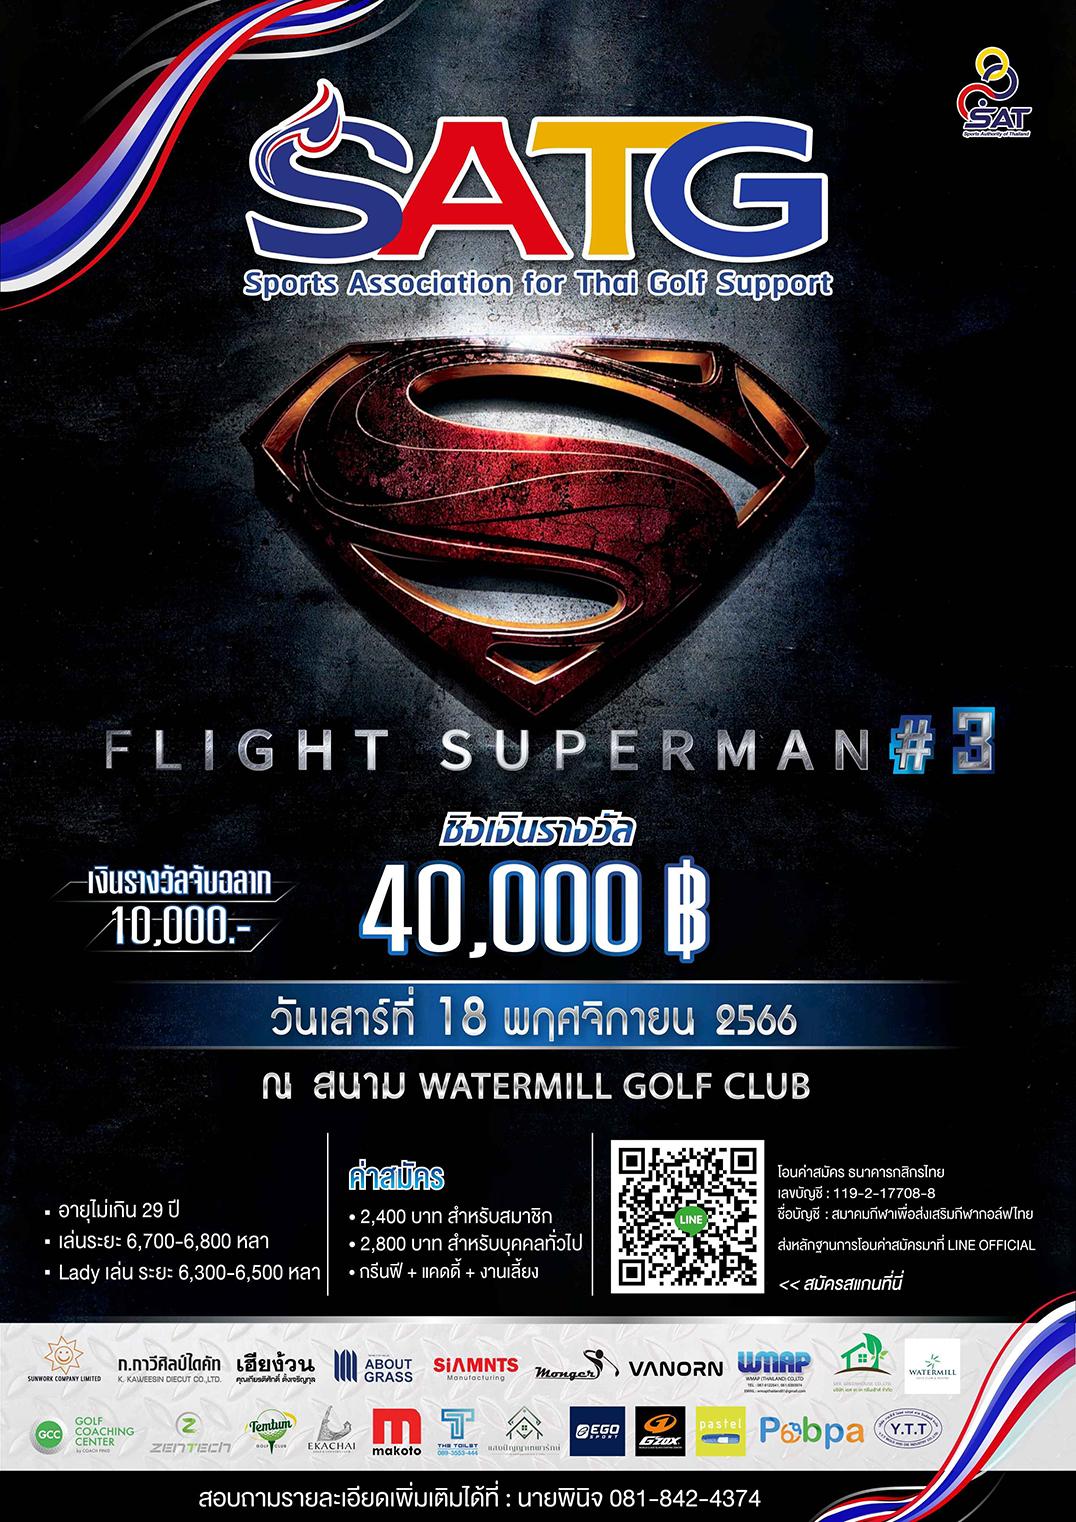 การแข่งขันกอล์ฟรายการ SATG CHAMPIONS  FLIGHT SUPERMAN # 3  ชิงเงินรางวัล 40,000 บาท